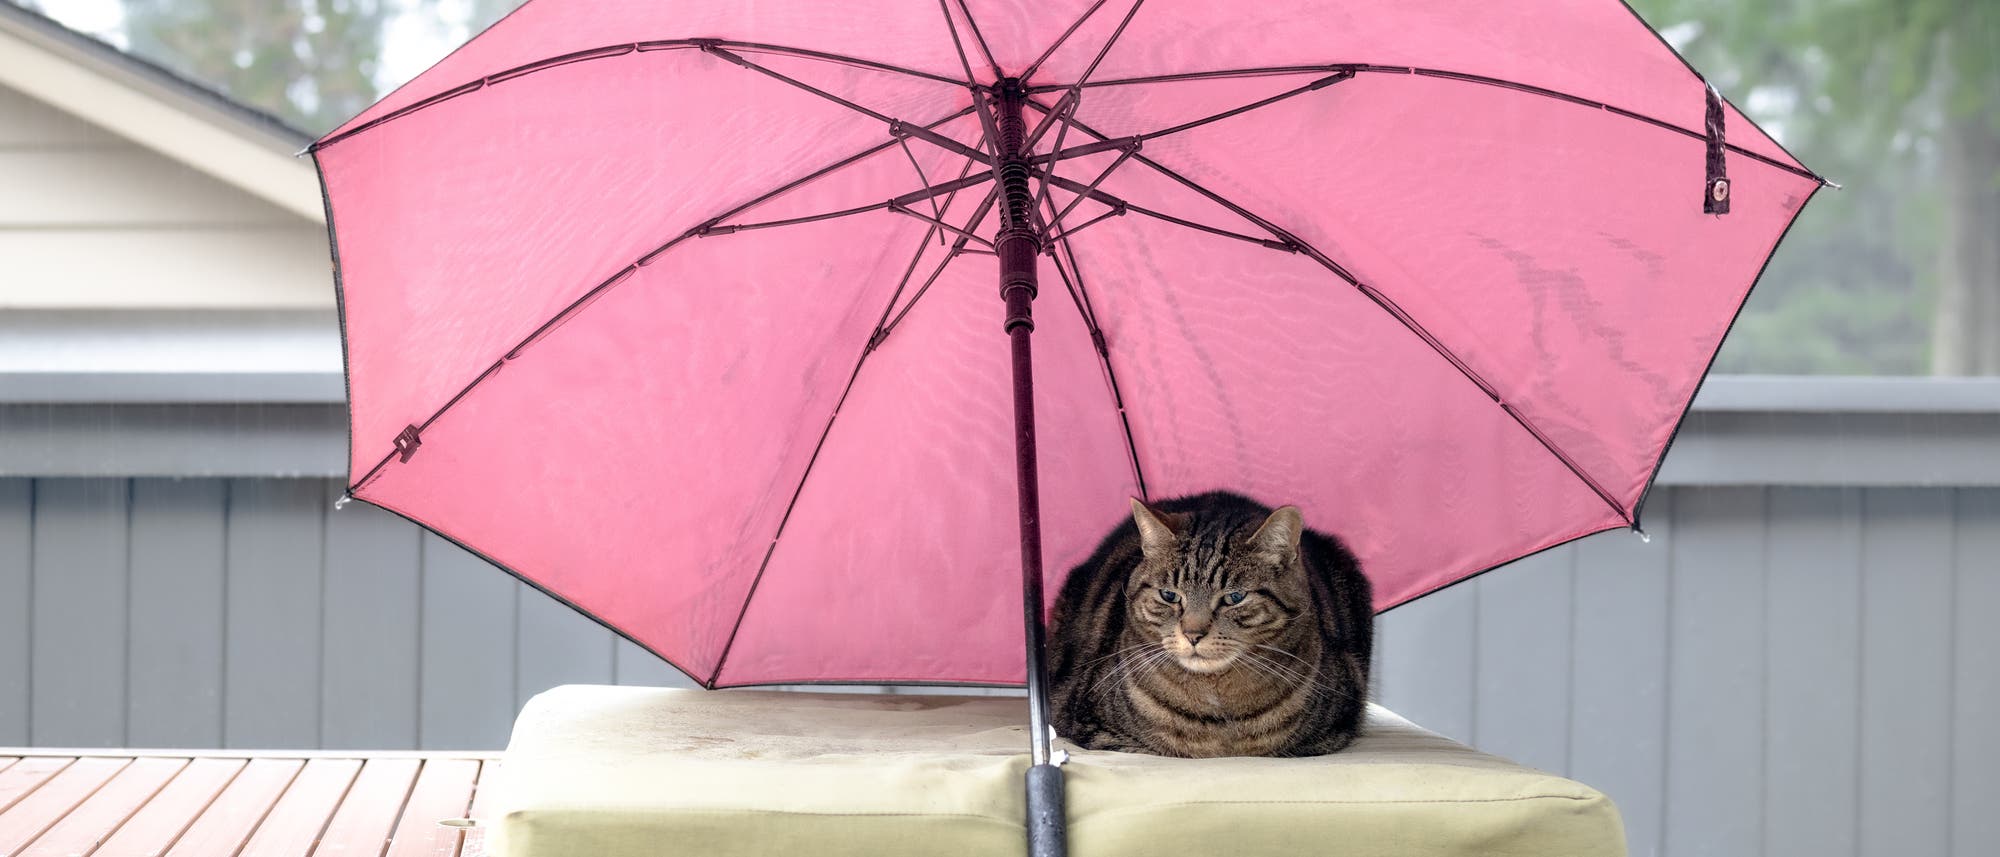 Eine Katze sitz unter einem rosafarbenen Regenschirm auf einem Kissen.